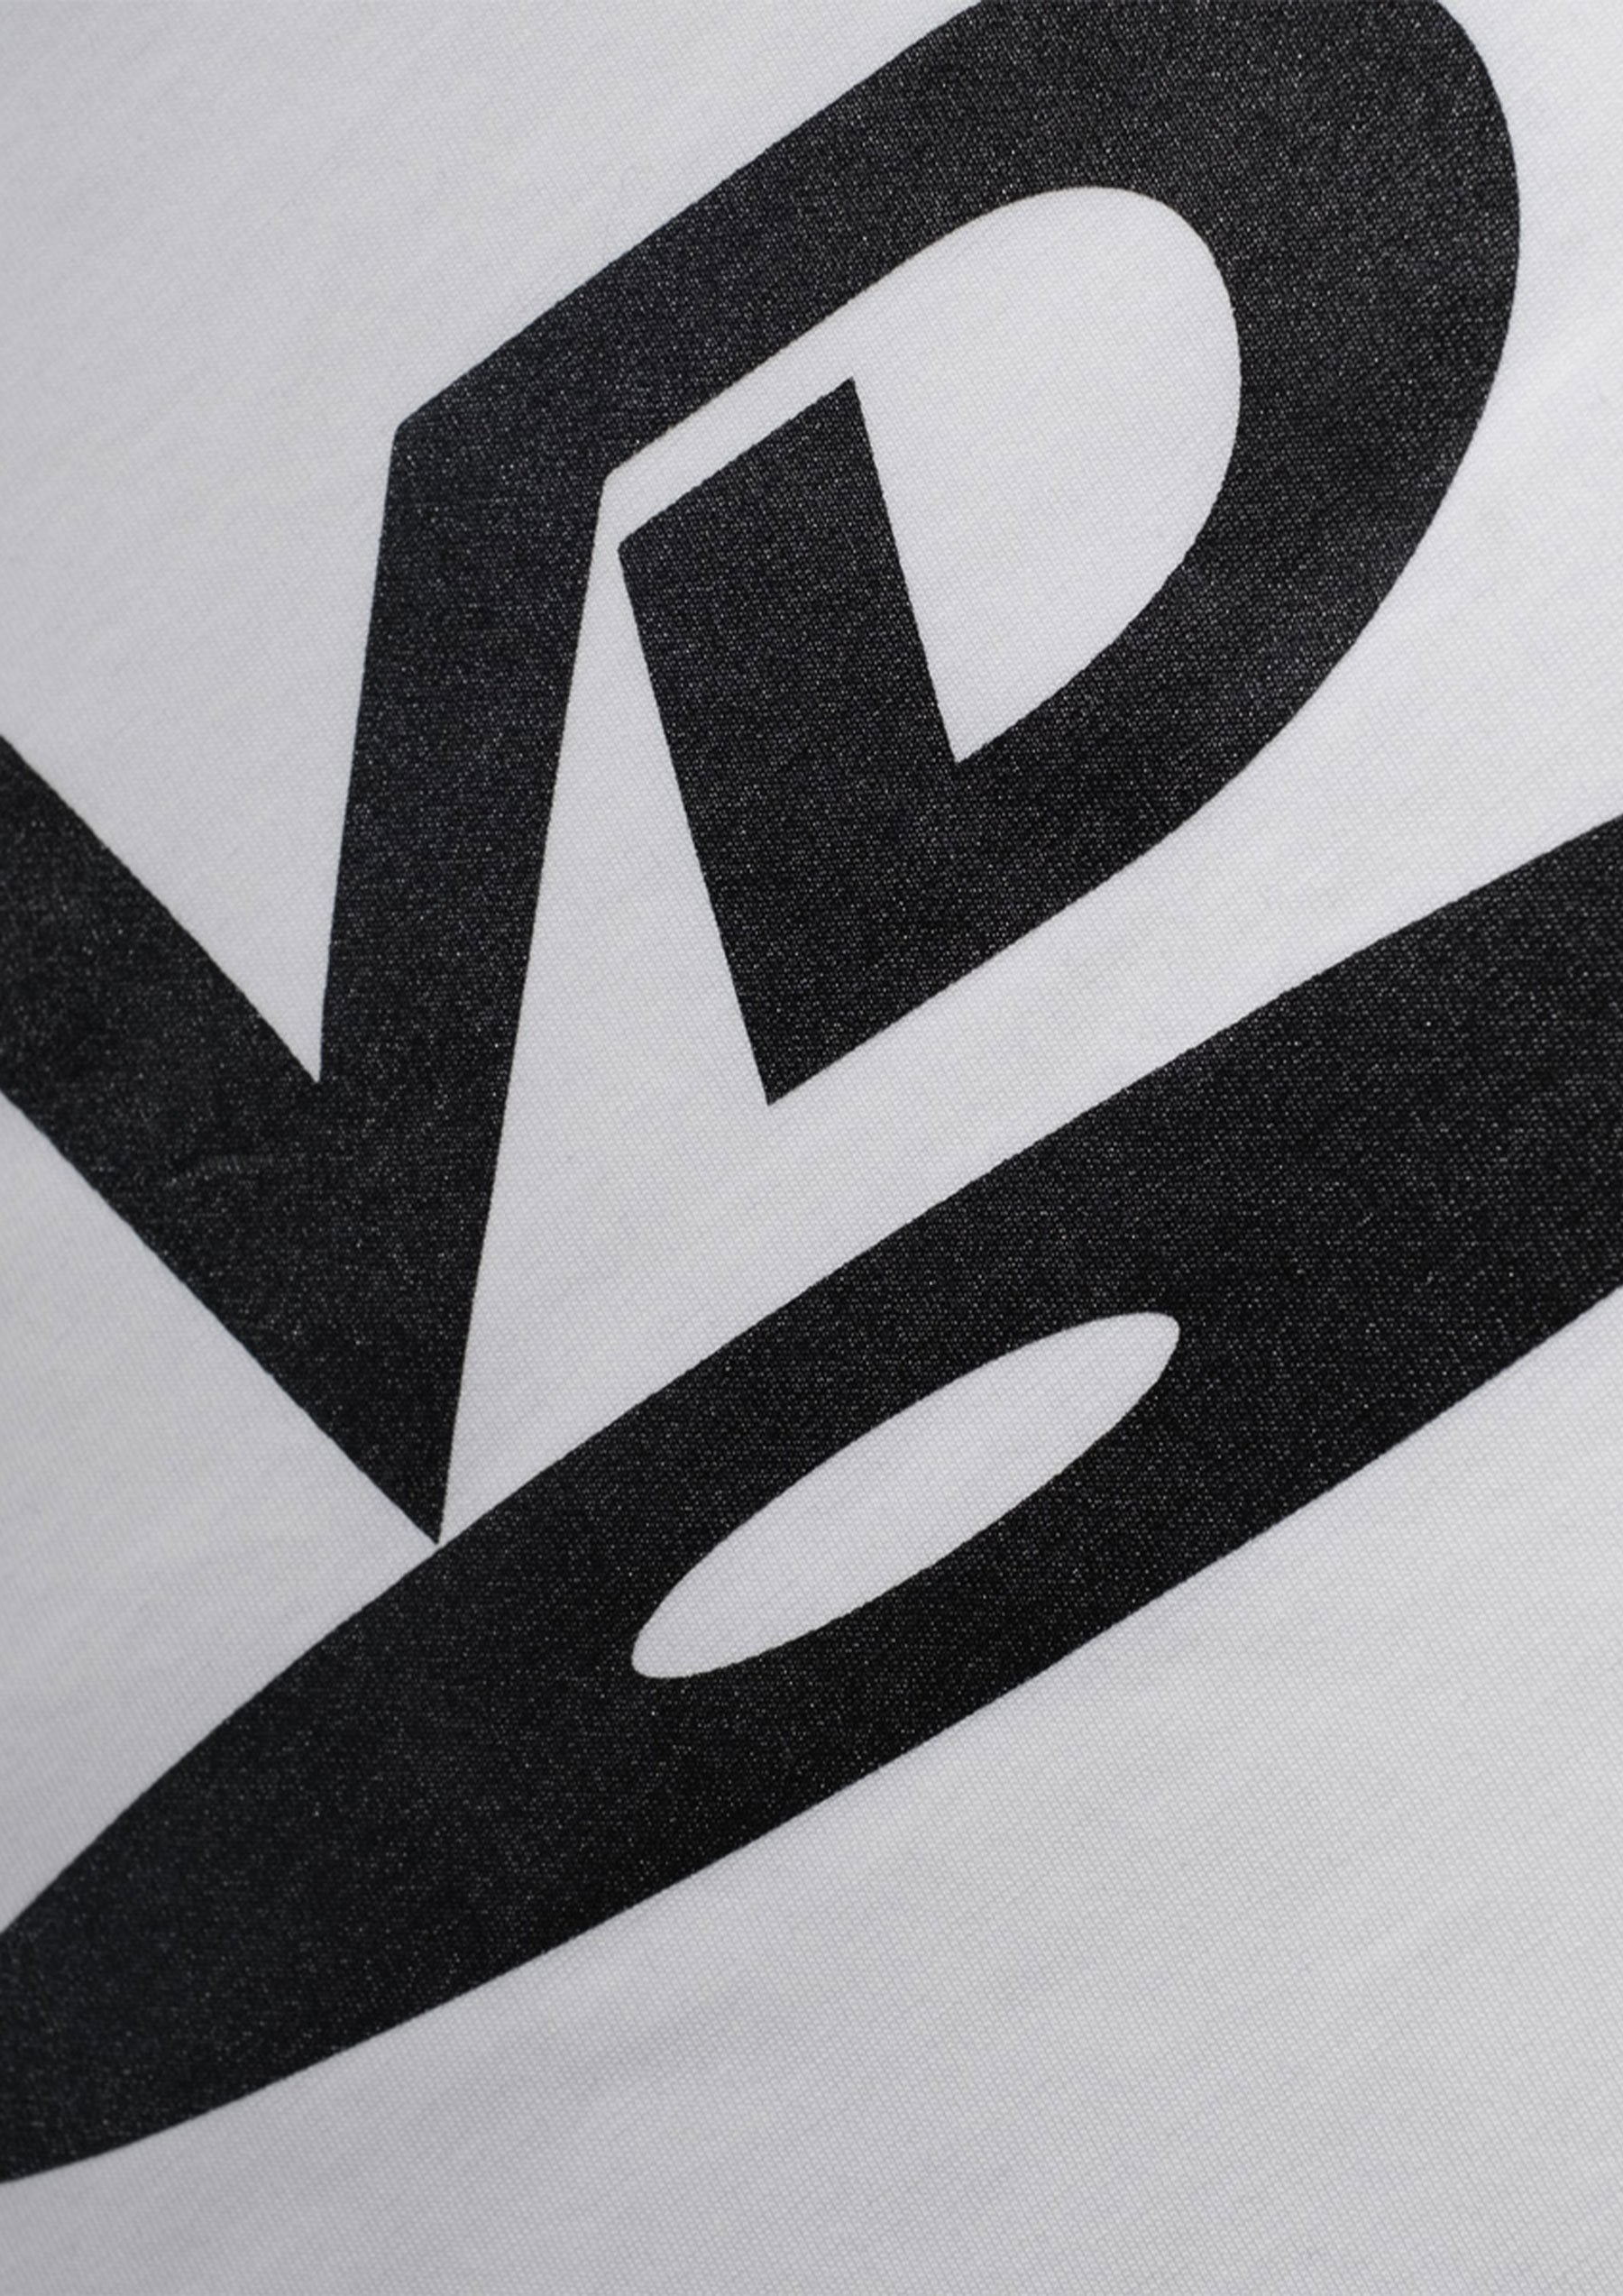 Letter Vd Logo Lightning Icon Letter Stock Vector (Royalty Free) 1024302388  | Shutterstock | Energy logo design, Alphabet wallpaper, Galaxy wallpaper